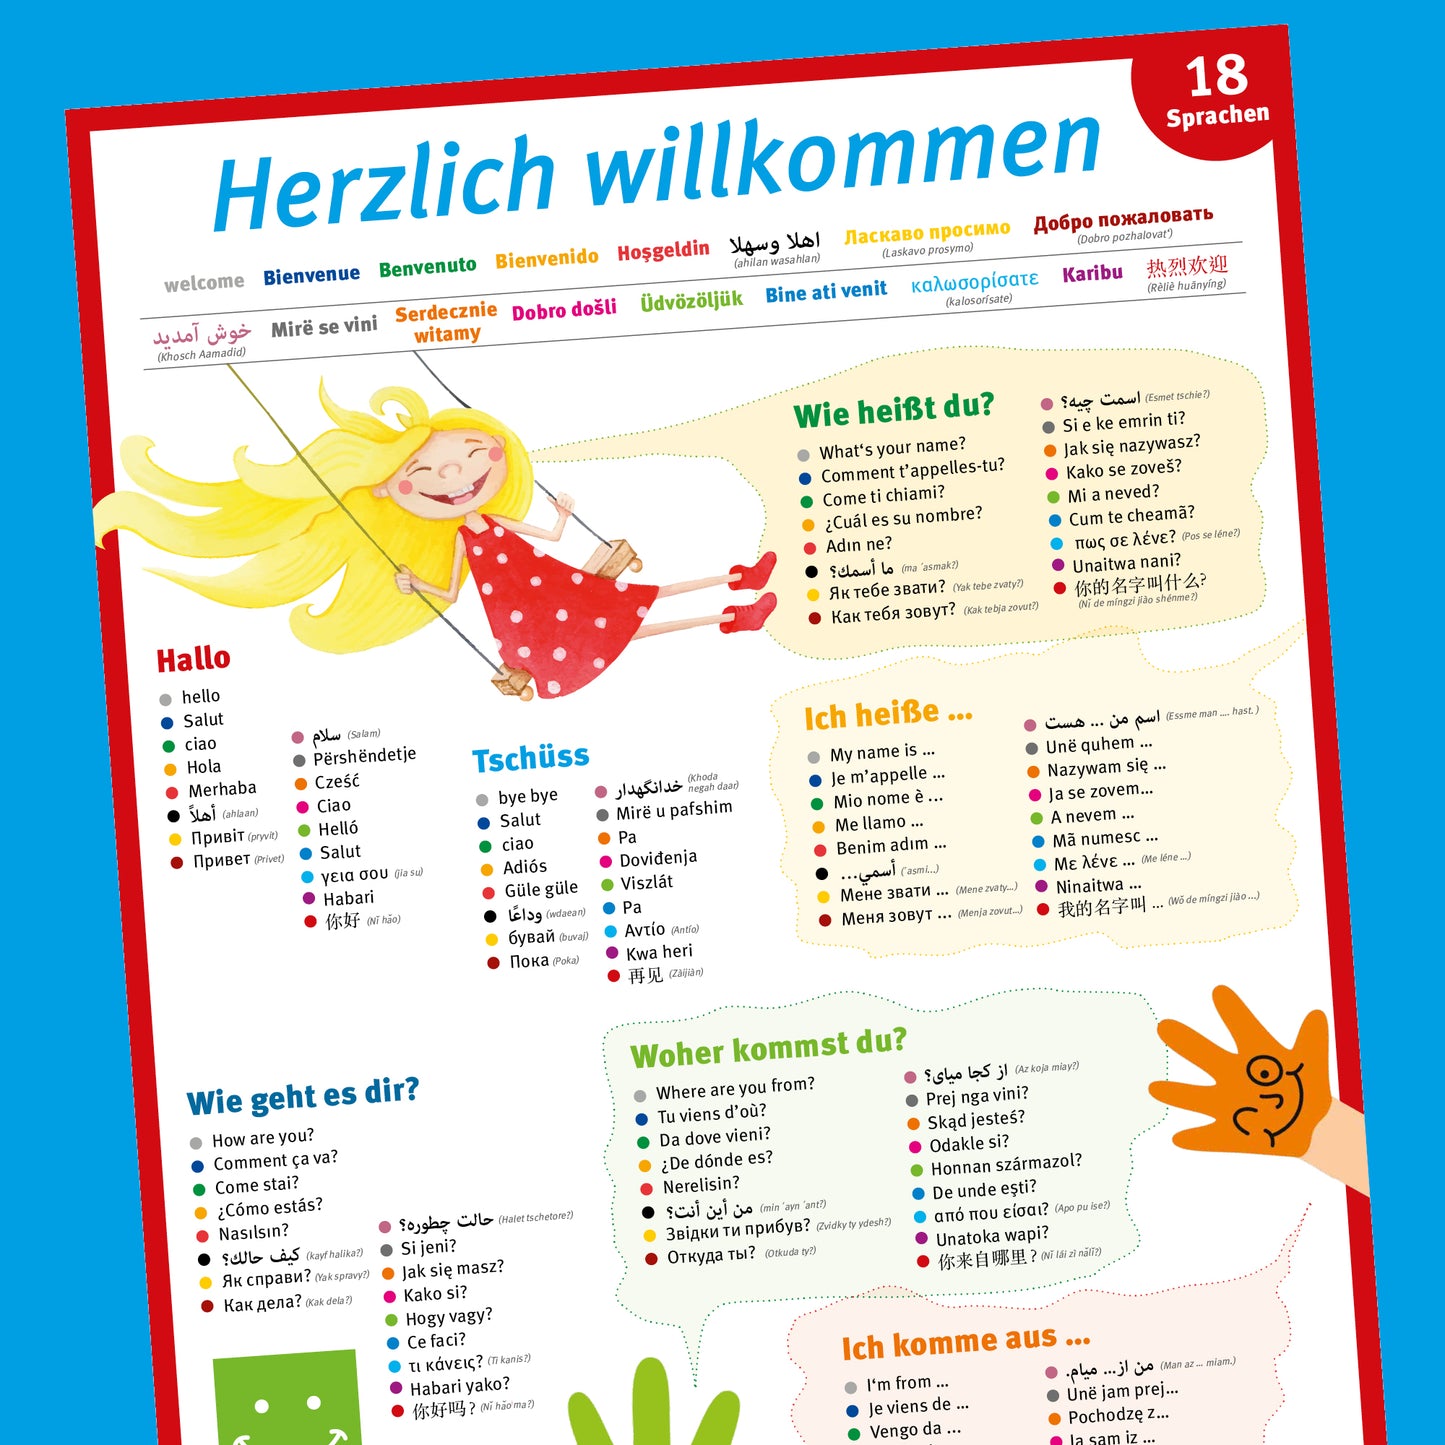 10 x A1 Poster – 18 Sprachen "Willkommen"